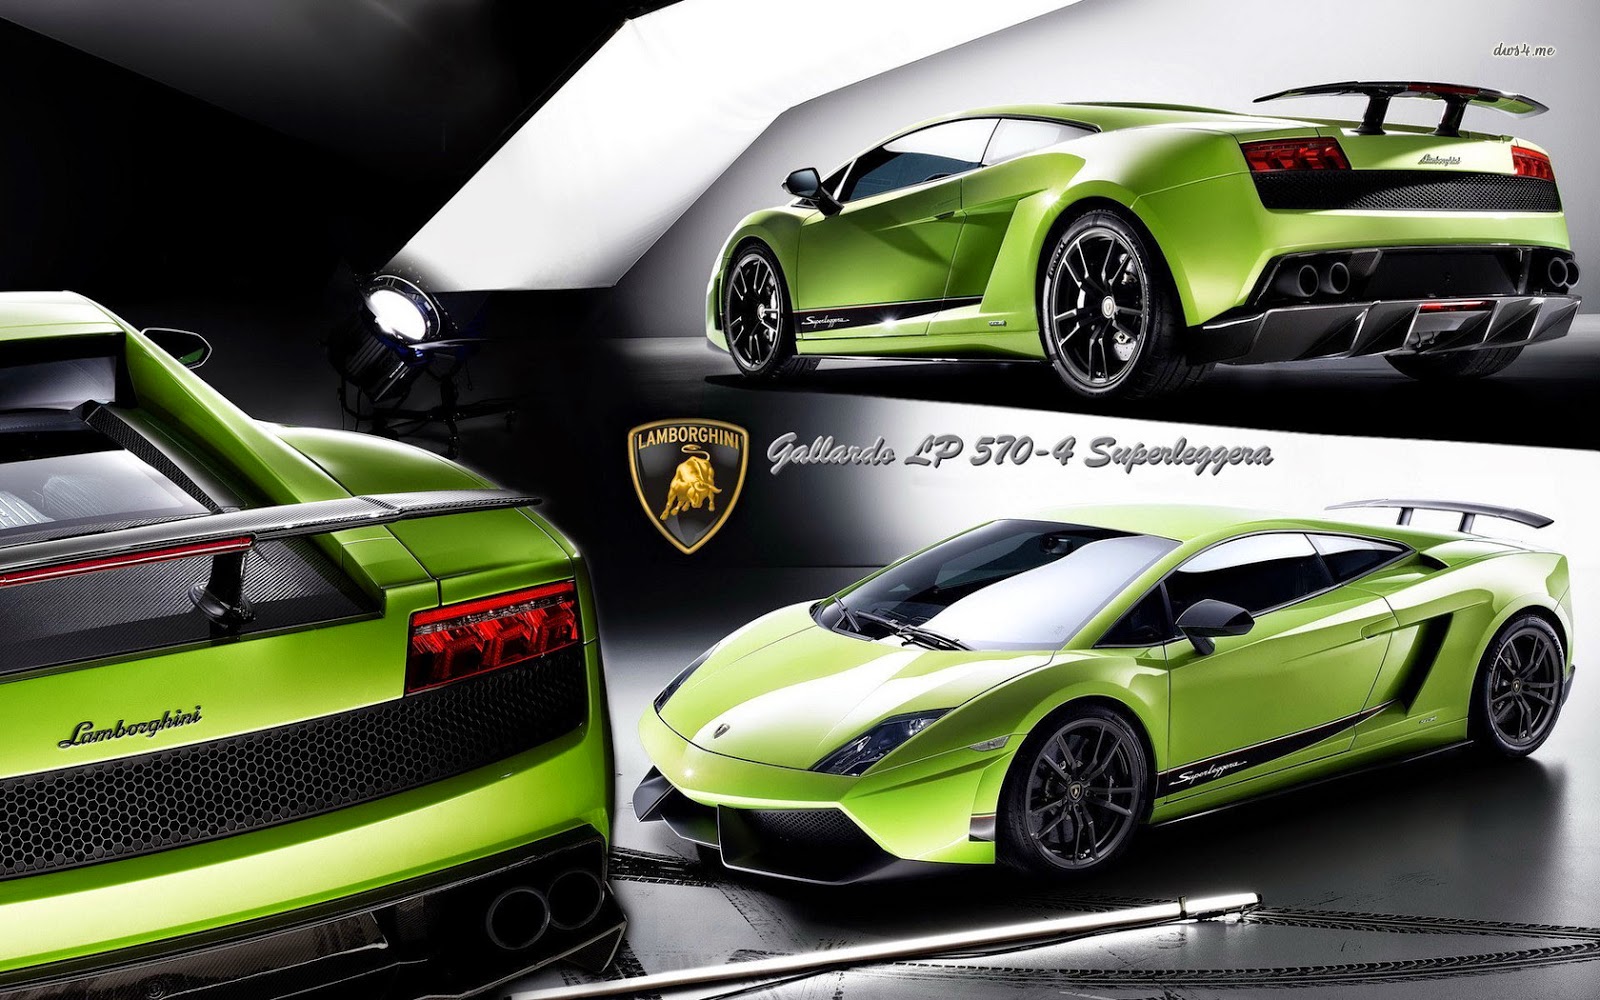  Wallpaper Mobil Lamborghini Modifikasi  Ottomania86